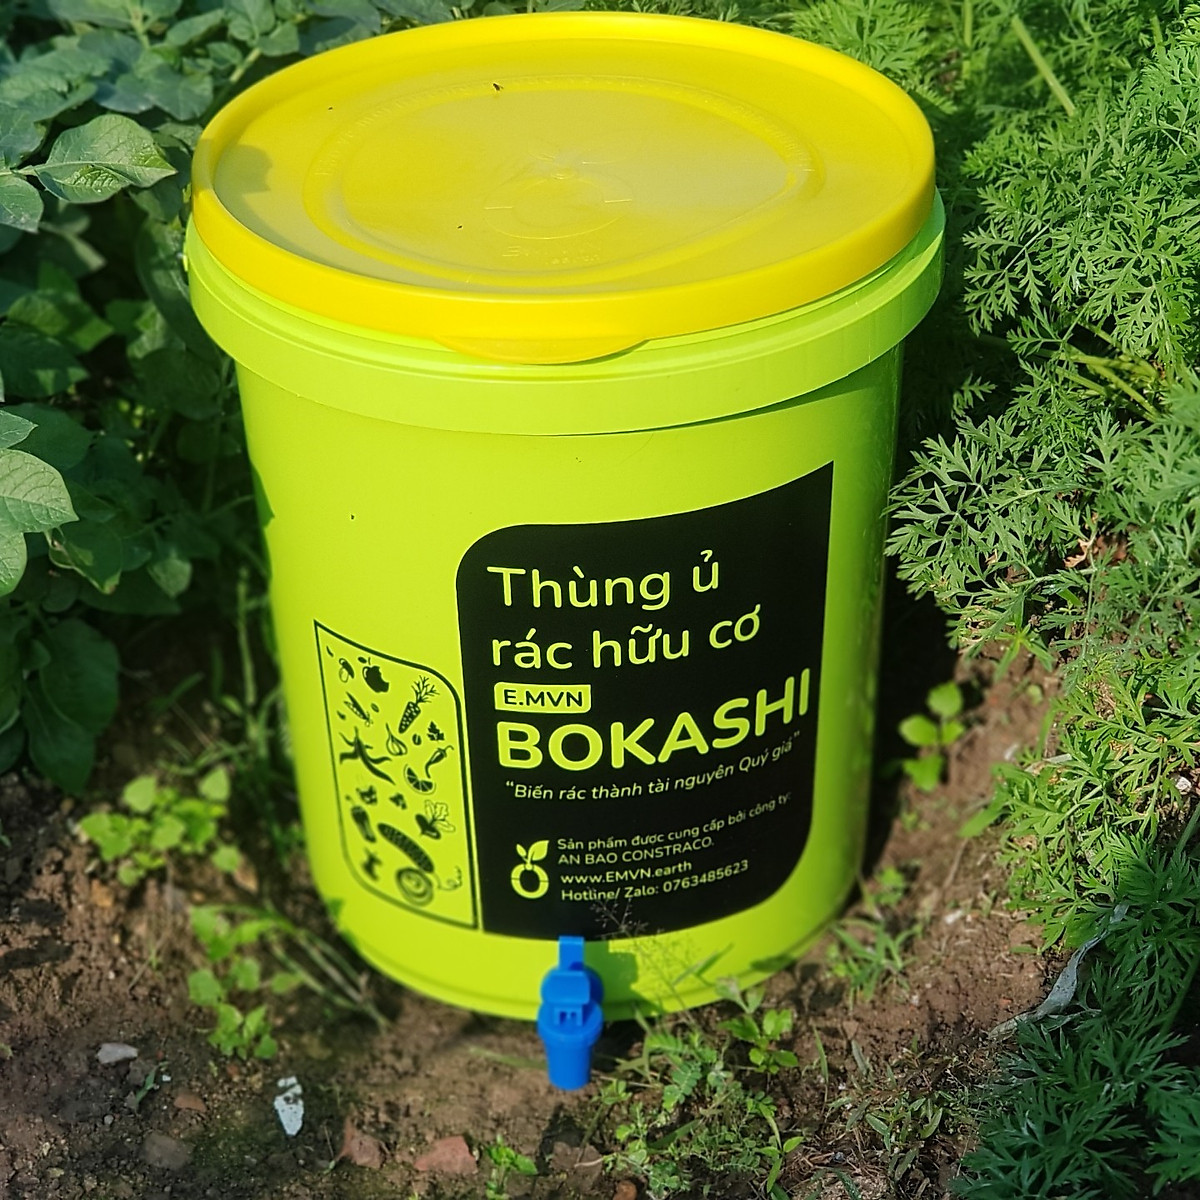 Combo thùng ủ rác hữu cơ Bokashi 2 thùng + 3 túi 1kg Bokashi